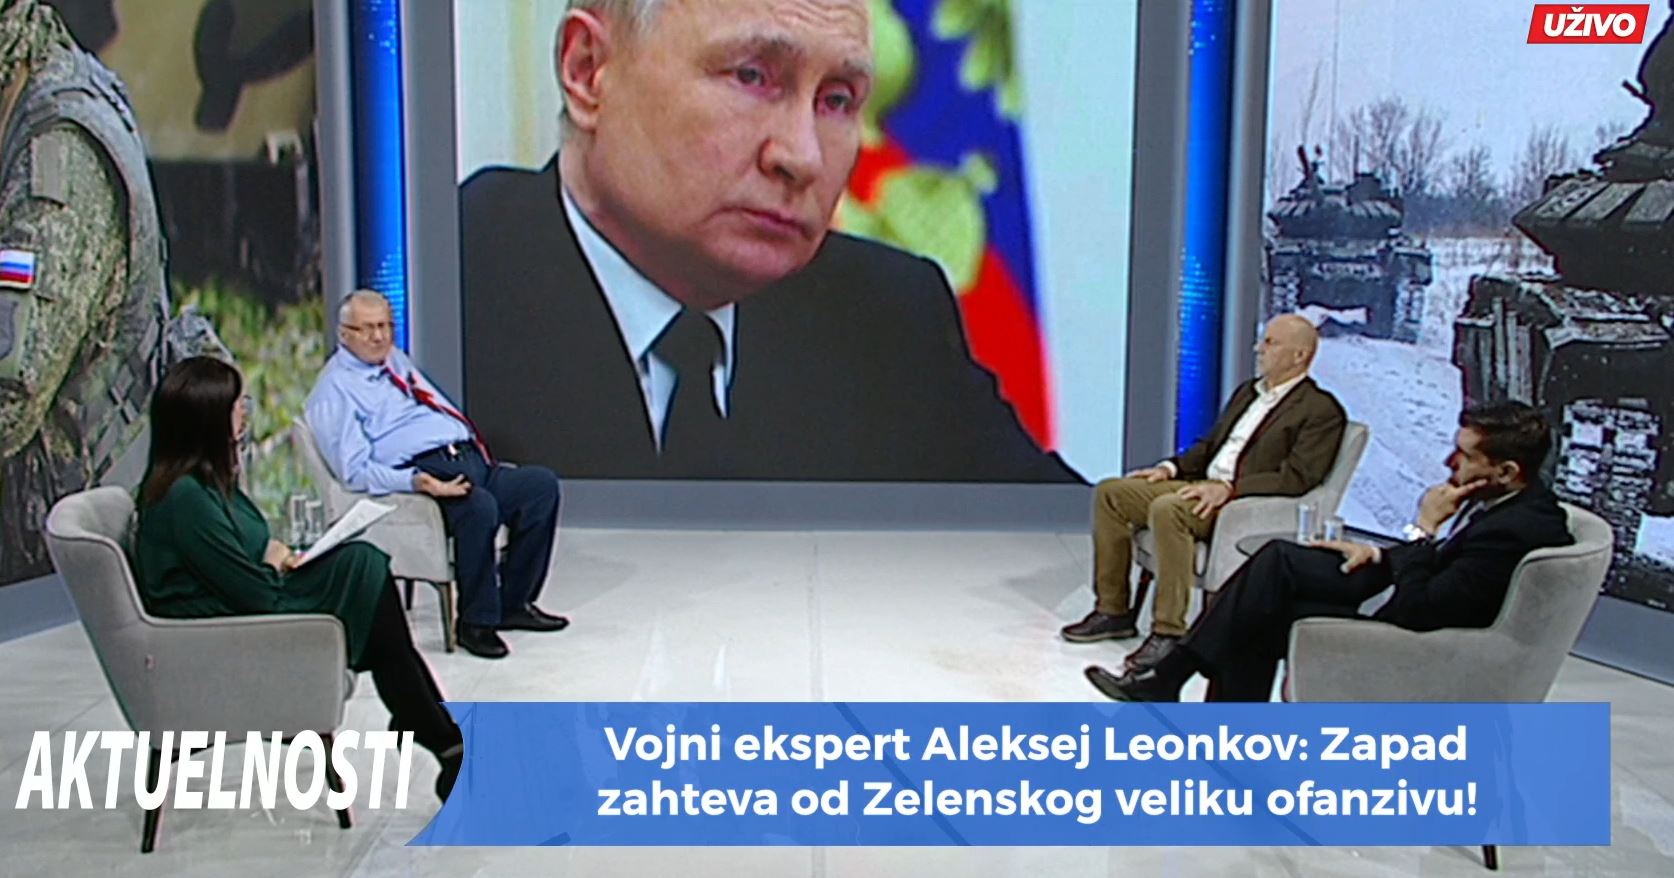 EMISIJA "AKTUELNOSTI" NA HAPPY TV: "NATO je objavio i vodi rat protiv pravoslavlja!"